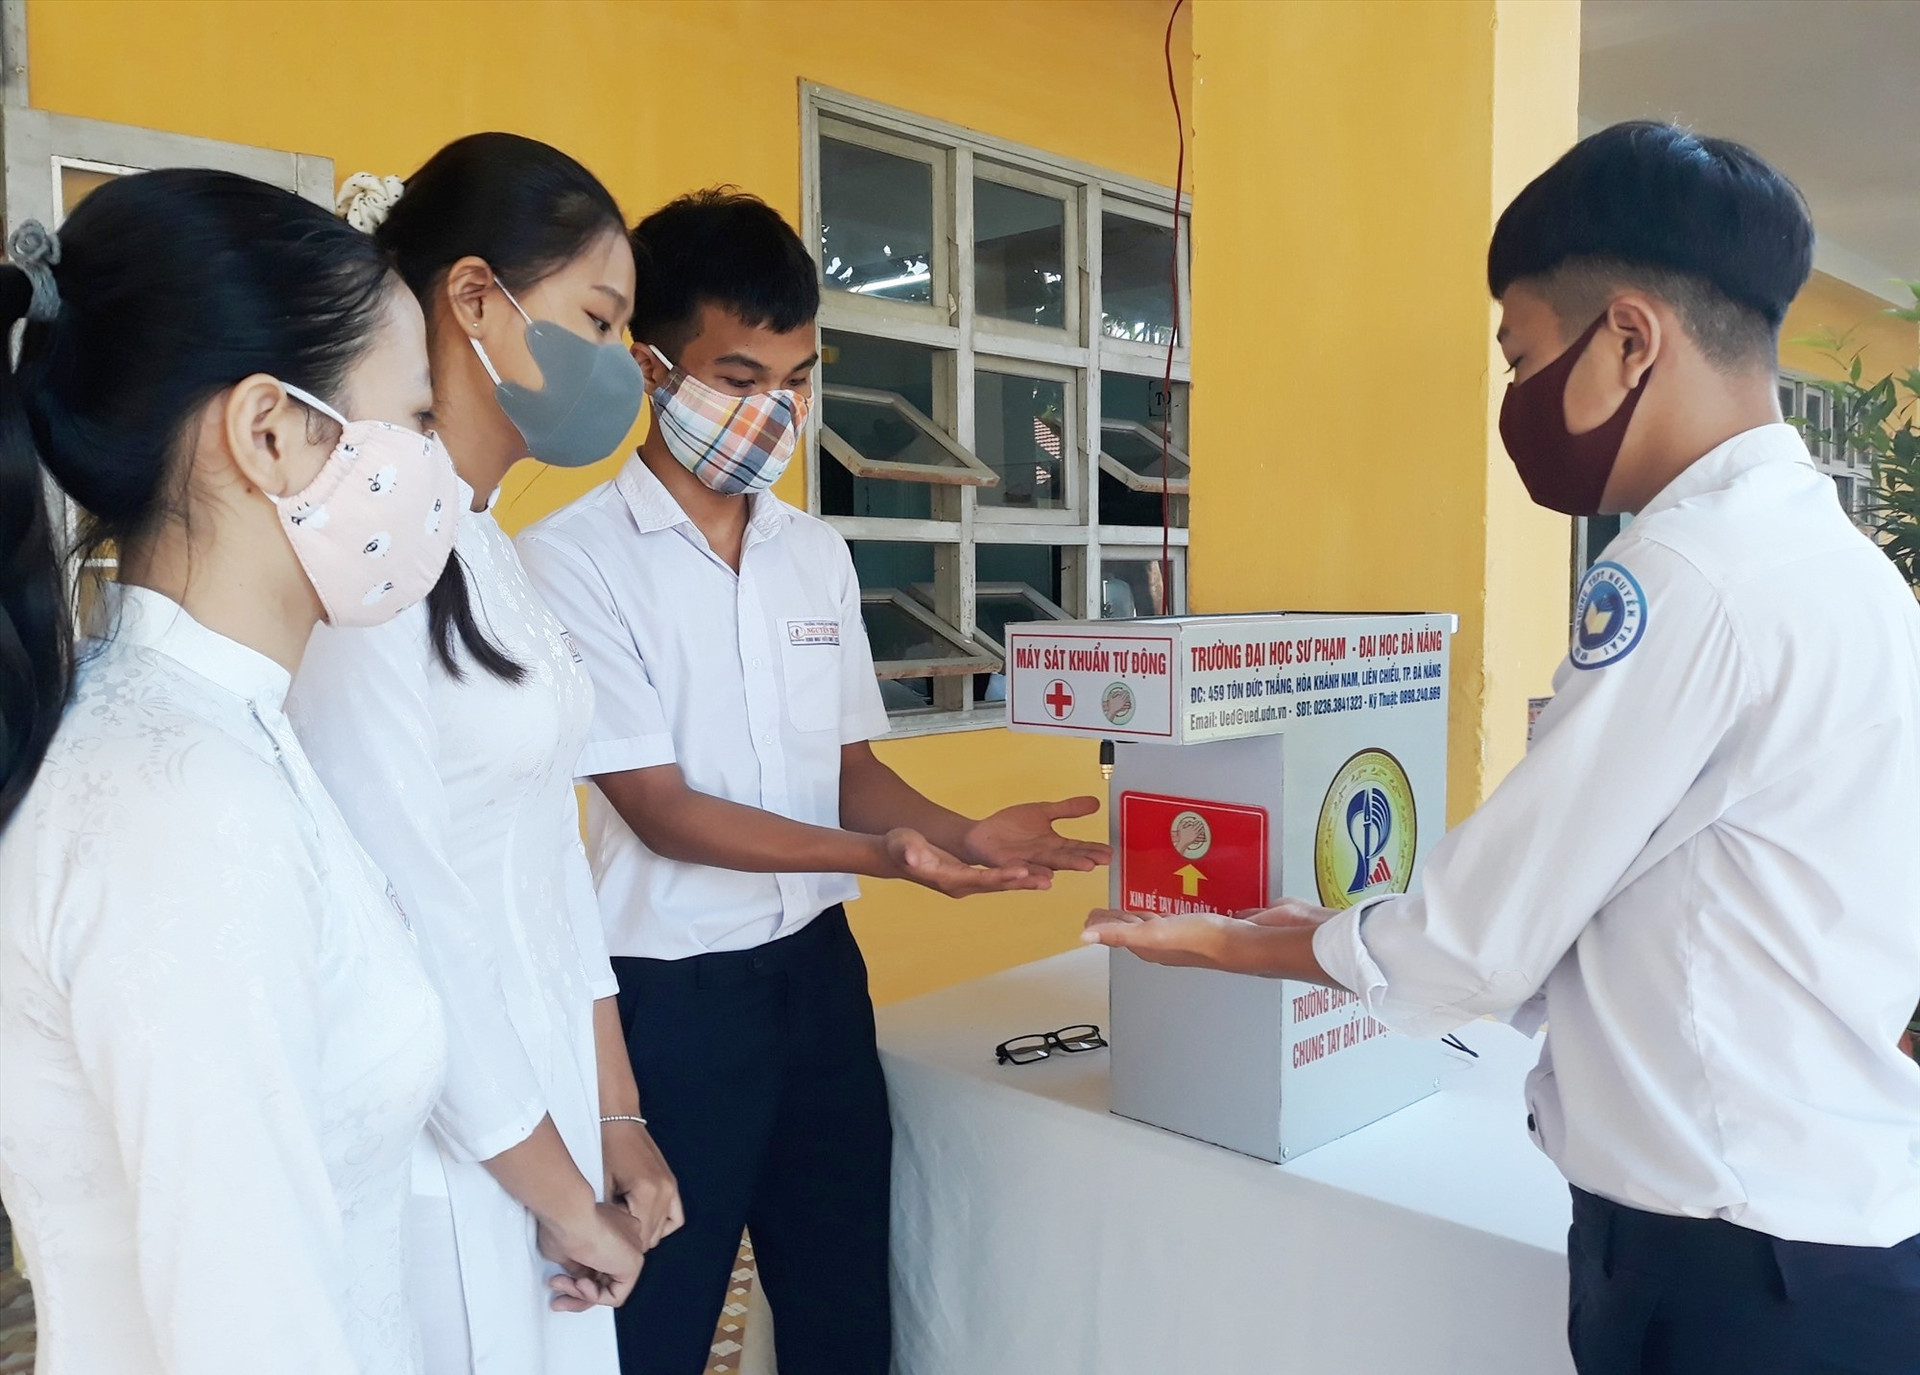 Học sinh Trường THPT Nguyễn Trãi sát khuẩn tay trước khi vào lớp học. Ảnh: C.H.